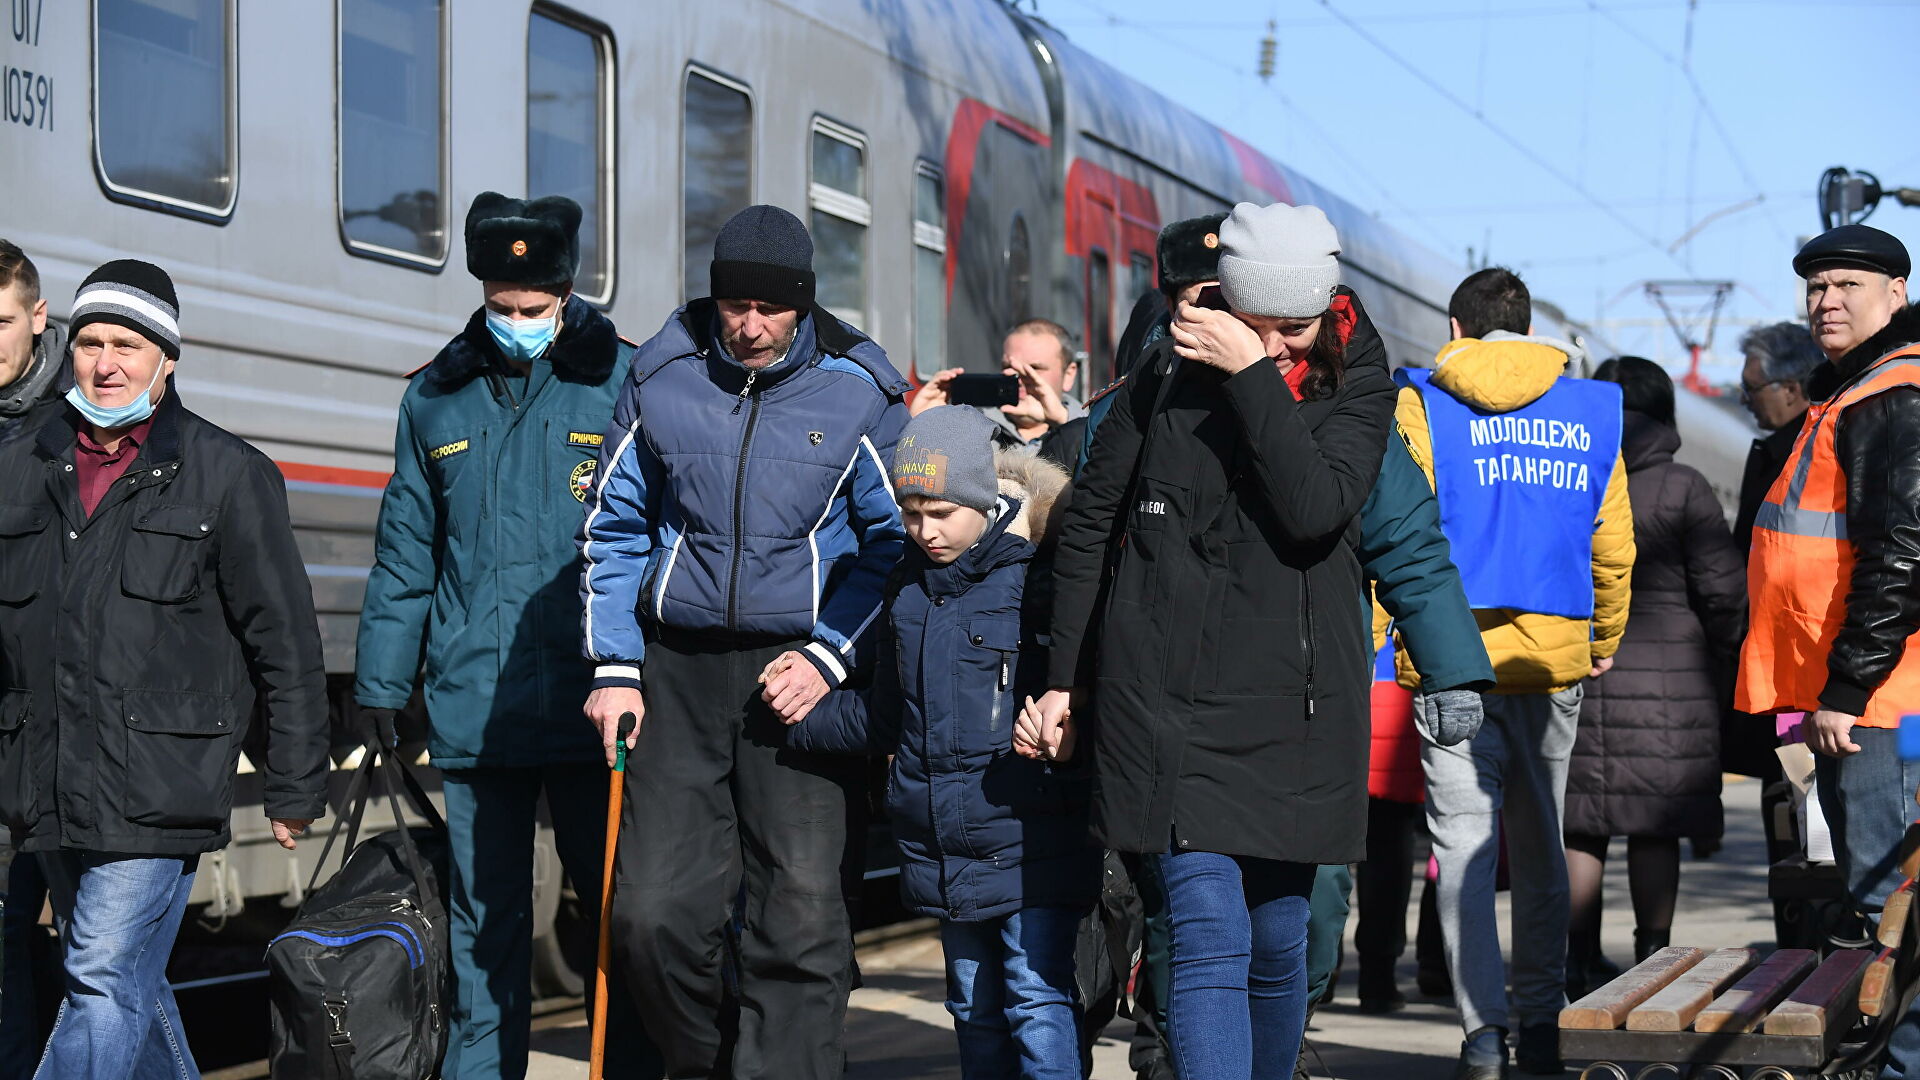 Беженцы из Донбасса во время посадки на поезд, следующий в Белгород, на железнодорожном вокзале в Таганроге - РИА Новости, 1920, 21.02.2022